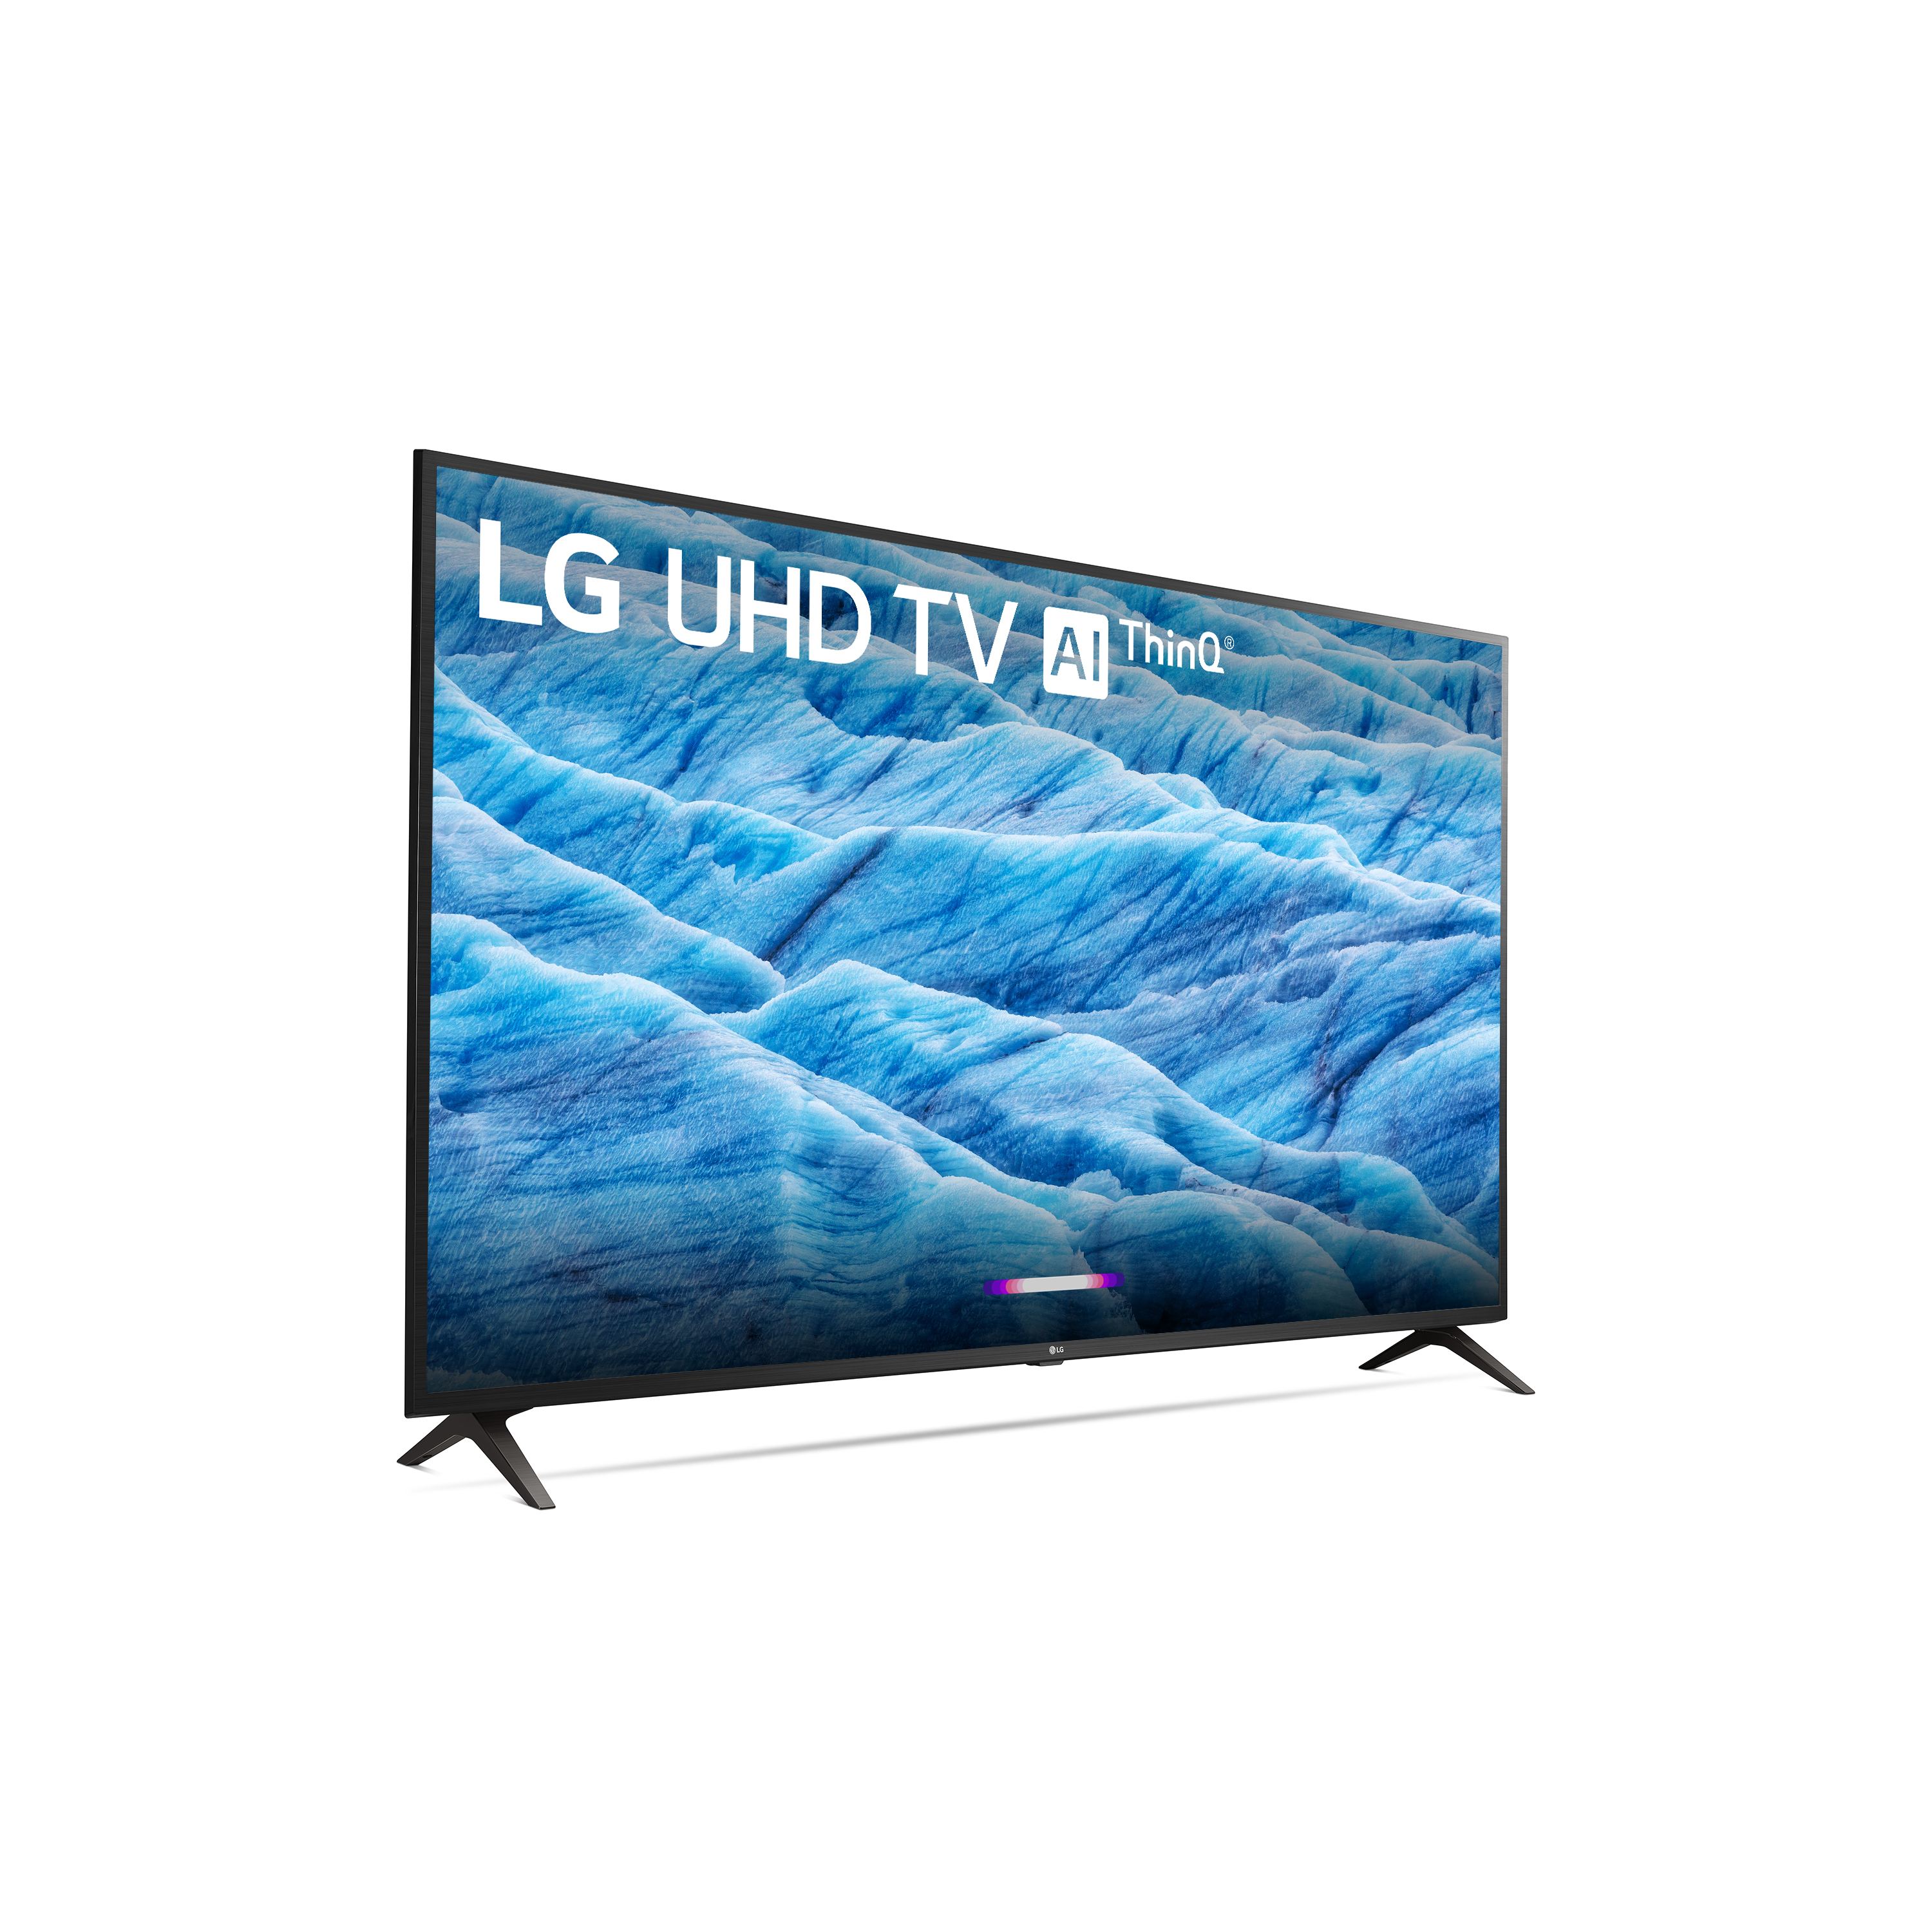 LG 65" Class 4K (2160P) Ultra HD Smart LED HDR TV 65UM7300PUA 2019 Model - image 3 of 14